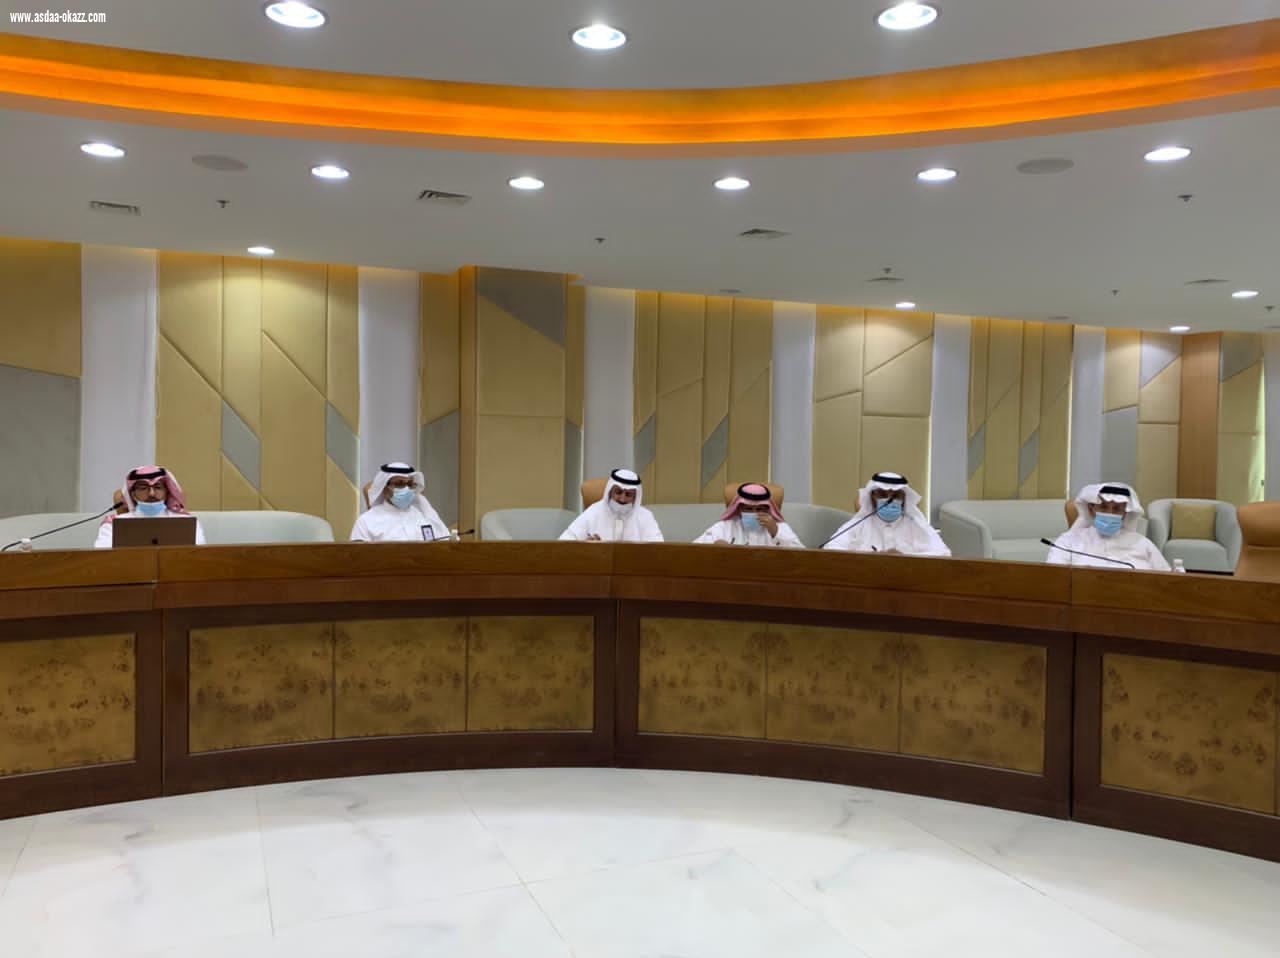 معالي رئيس جامعة الباحة يترأس الاجتماع الأول للجنة العمل على مبادرة تحول الجامعة إلى نظام الفصول الدراسية الثلاثة